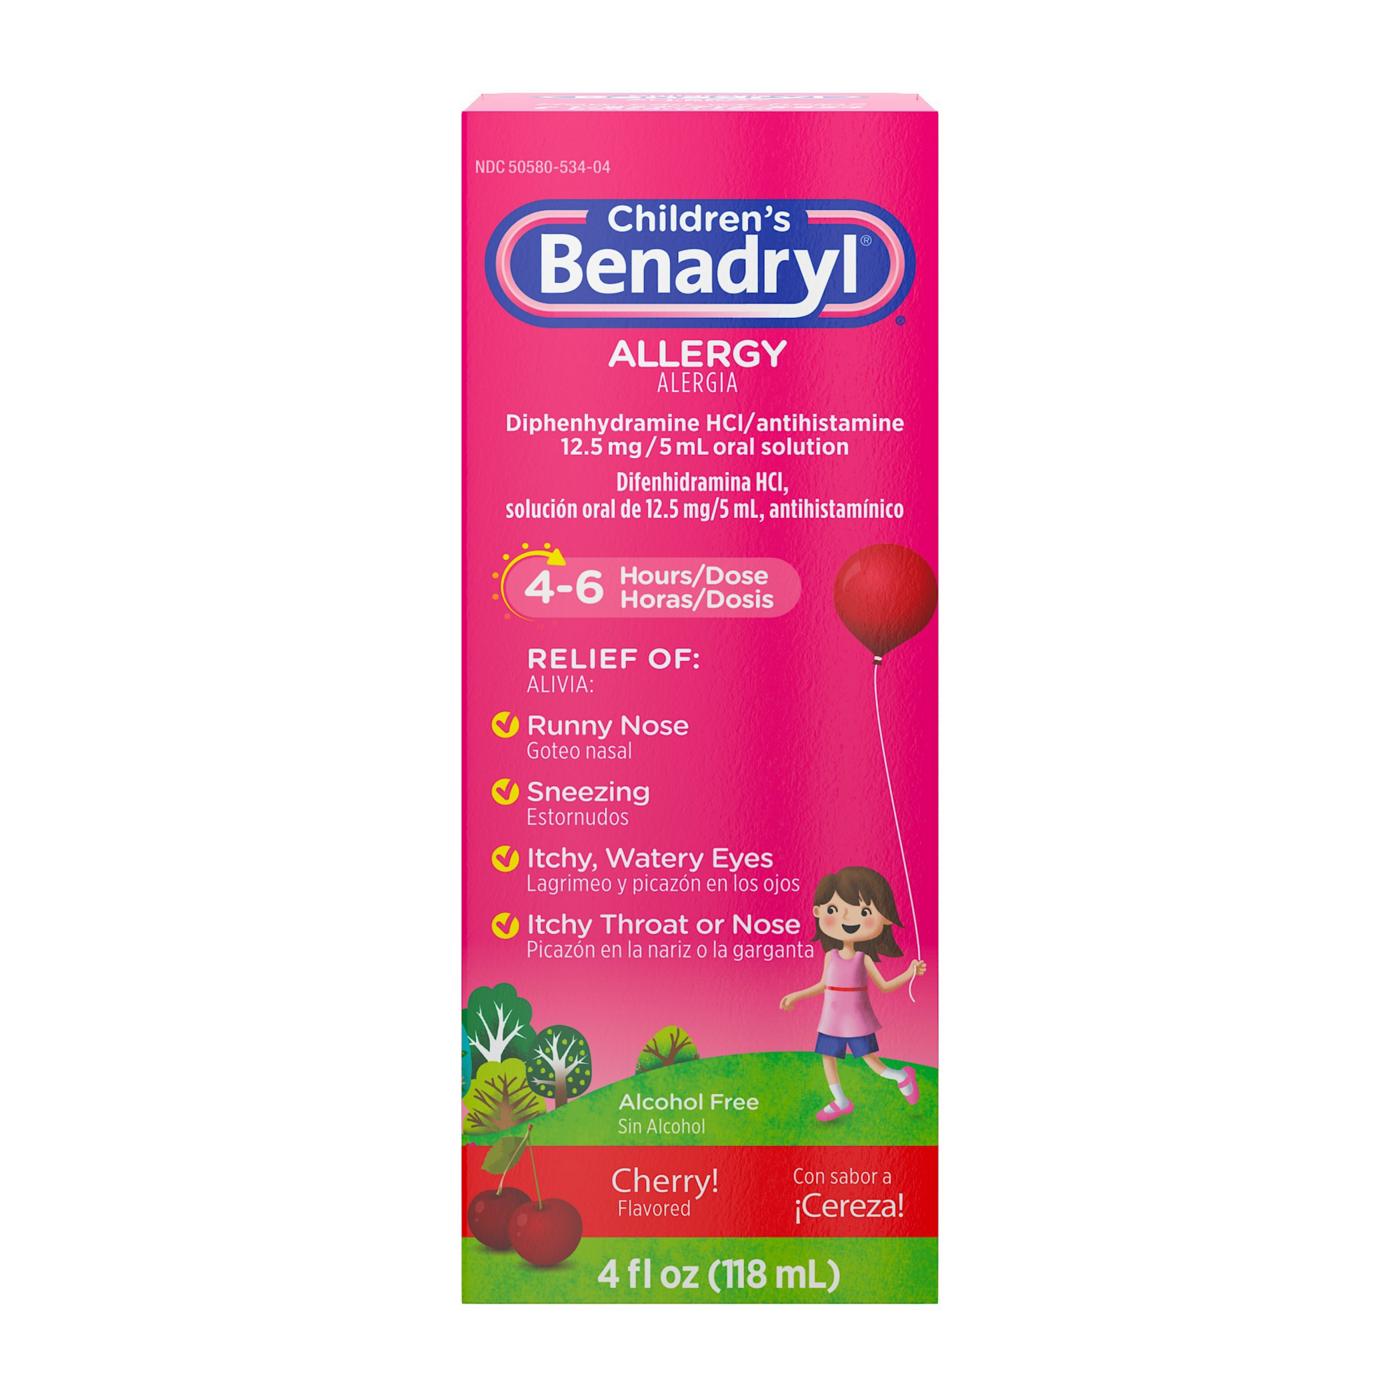 Benadryl Children's Allergy Liquid - Cherry; image 1 of 6